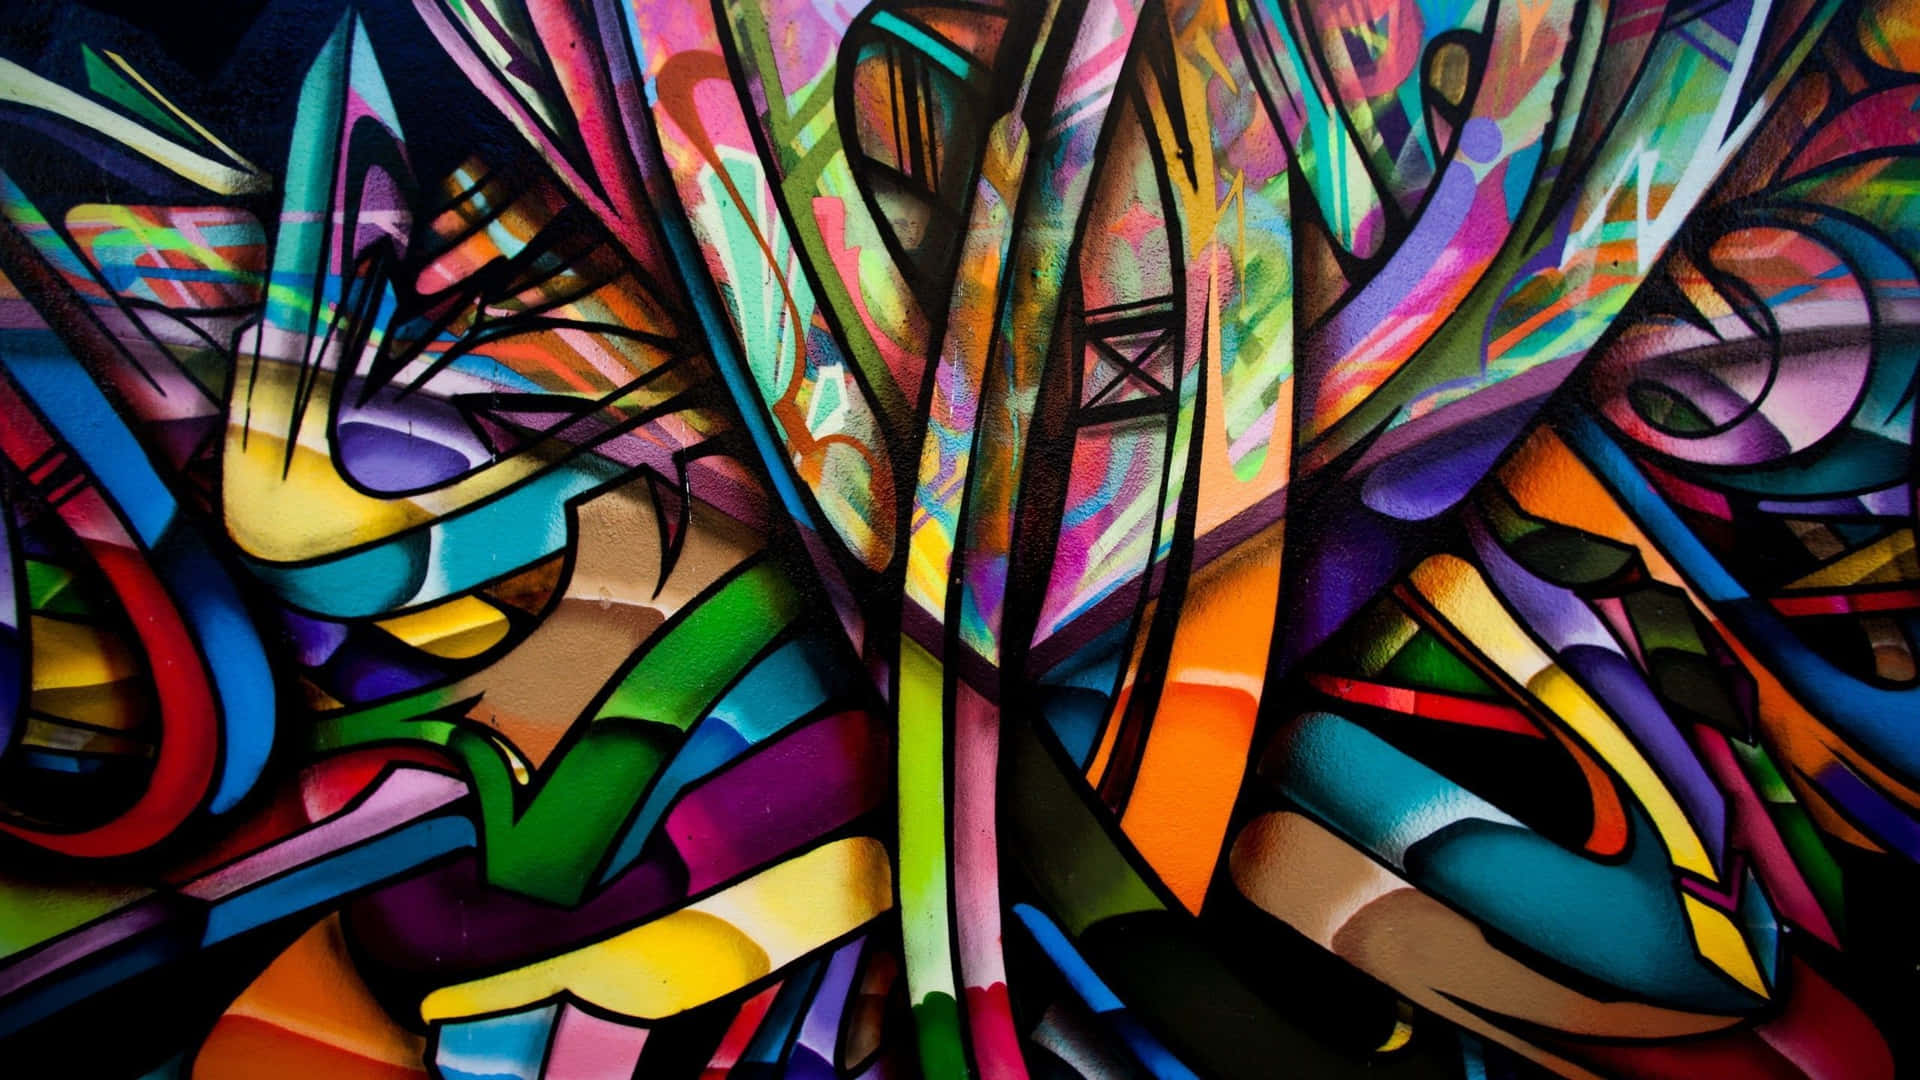 Arteabstracto Colorido En Estilo De Graffiti. Fondo de pantalla